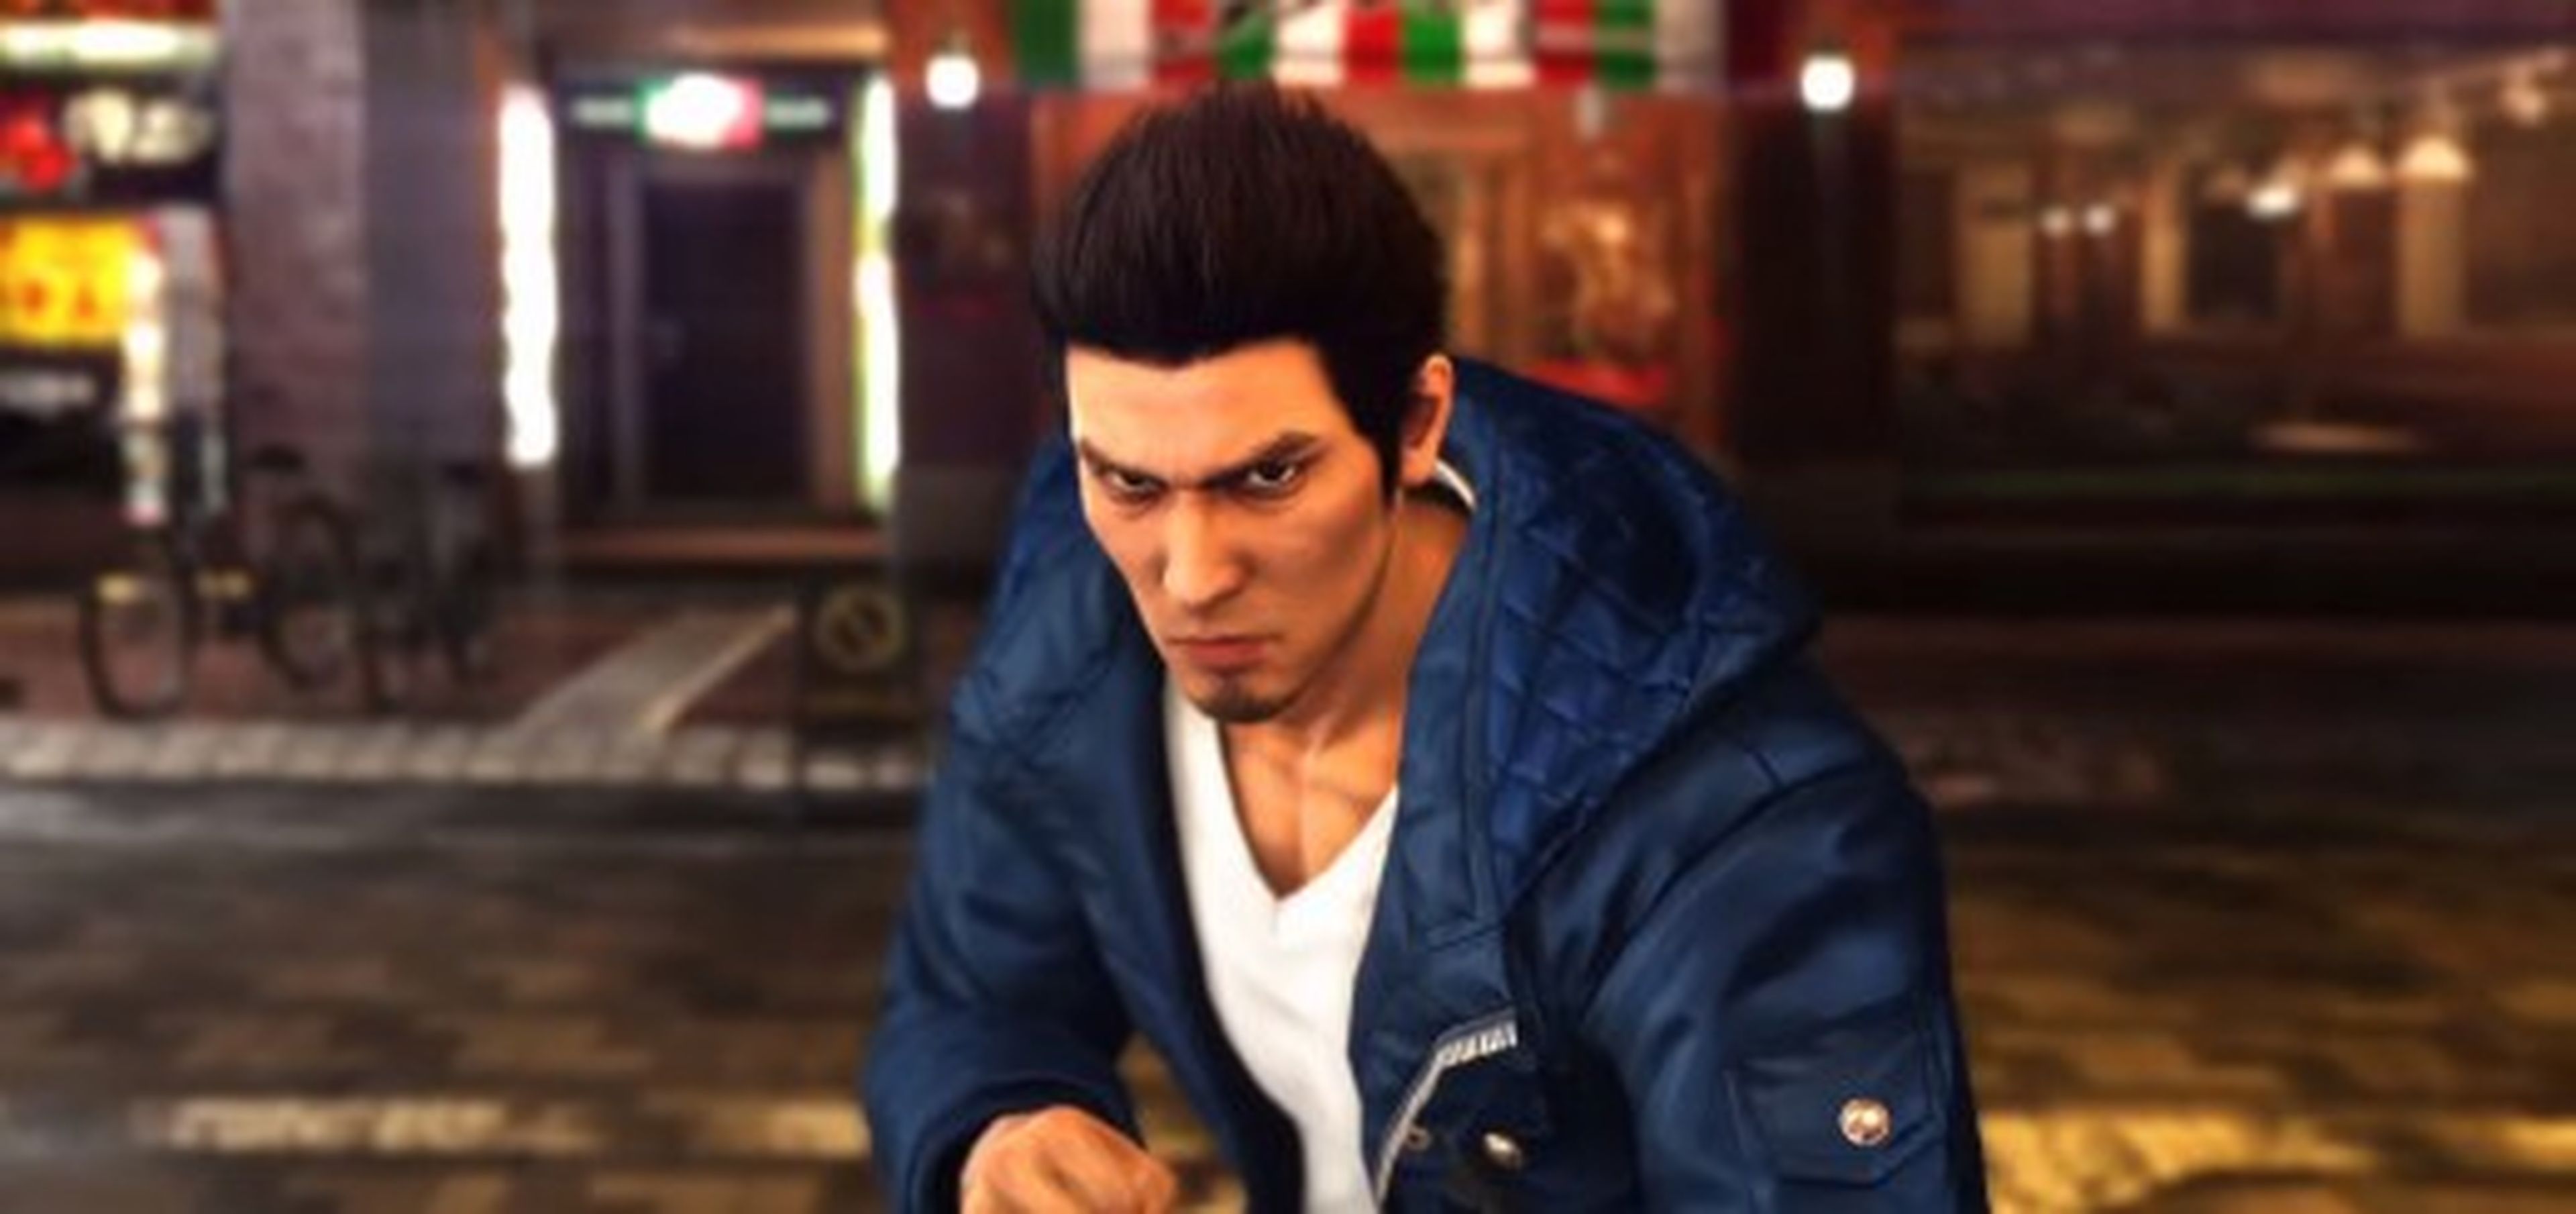 Yakuza 6 - Gameplay y más datos del exclusivo de PS4